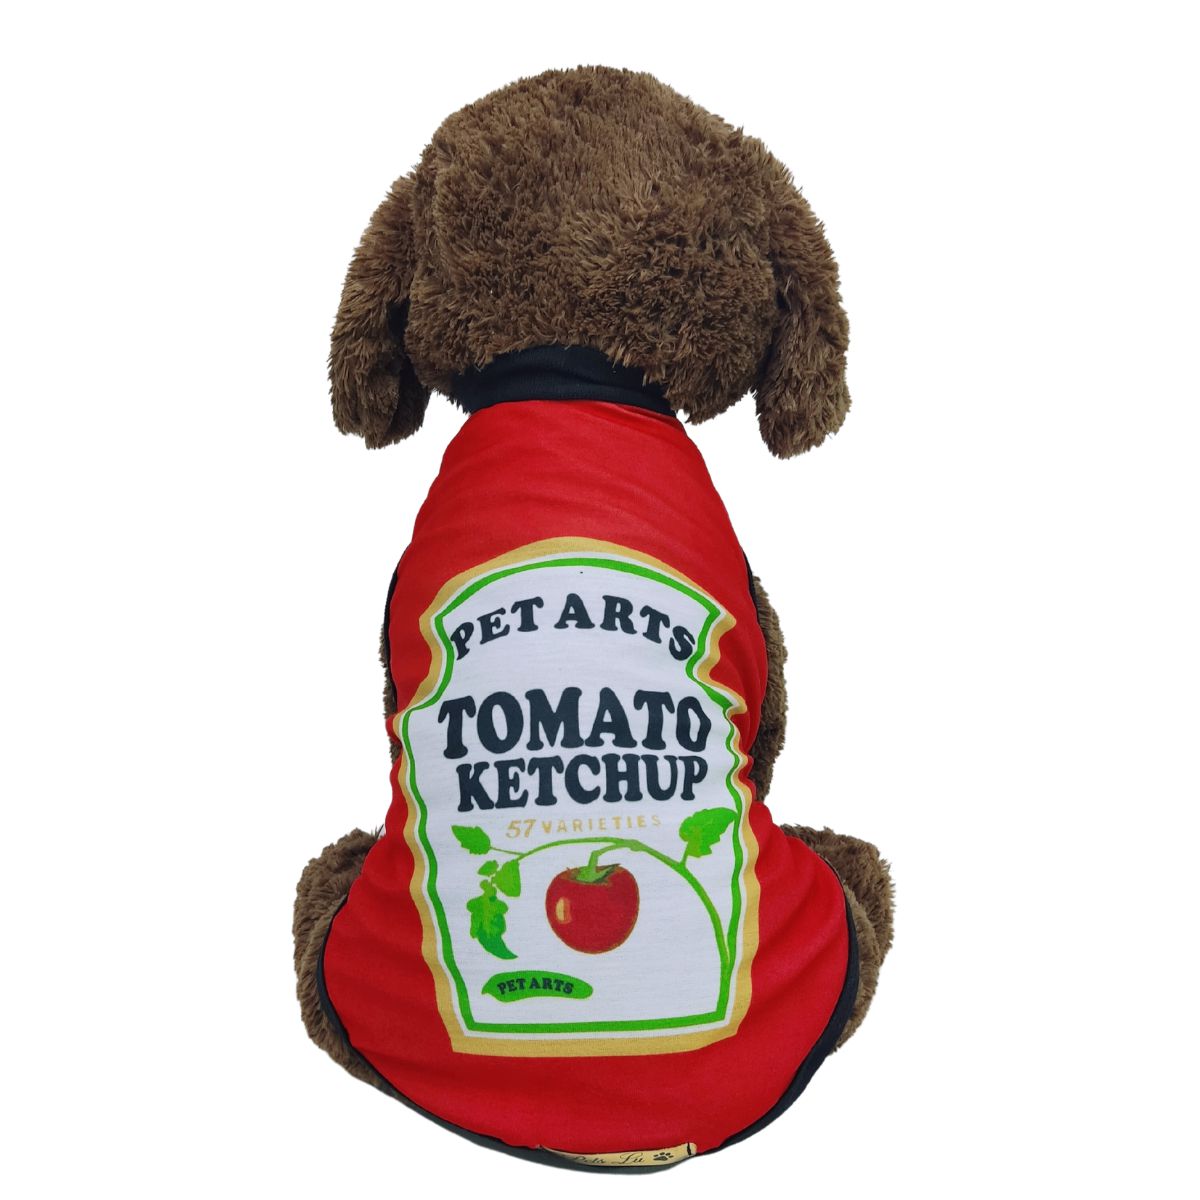 Roupa Pet - Ketchup Modelo Regata Básica - Pet Arts - Roupinhas para pet